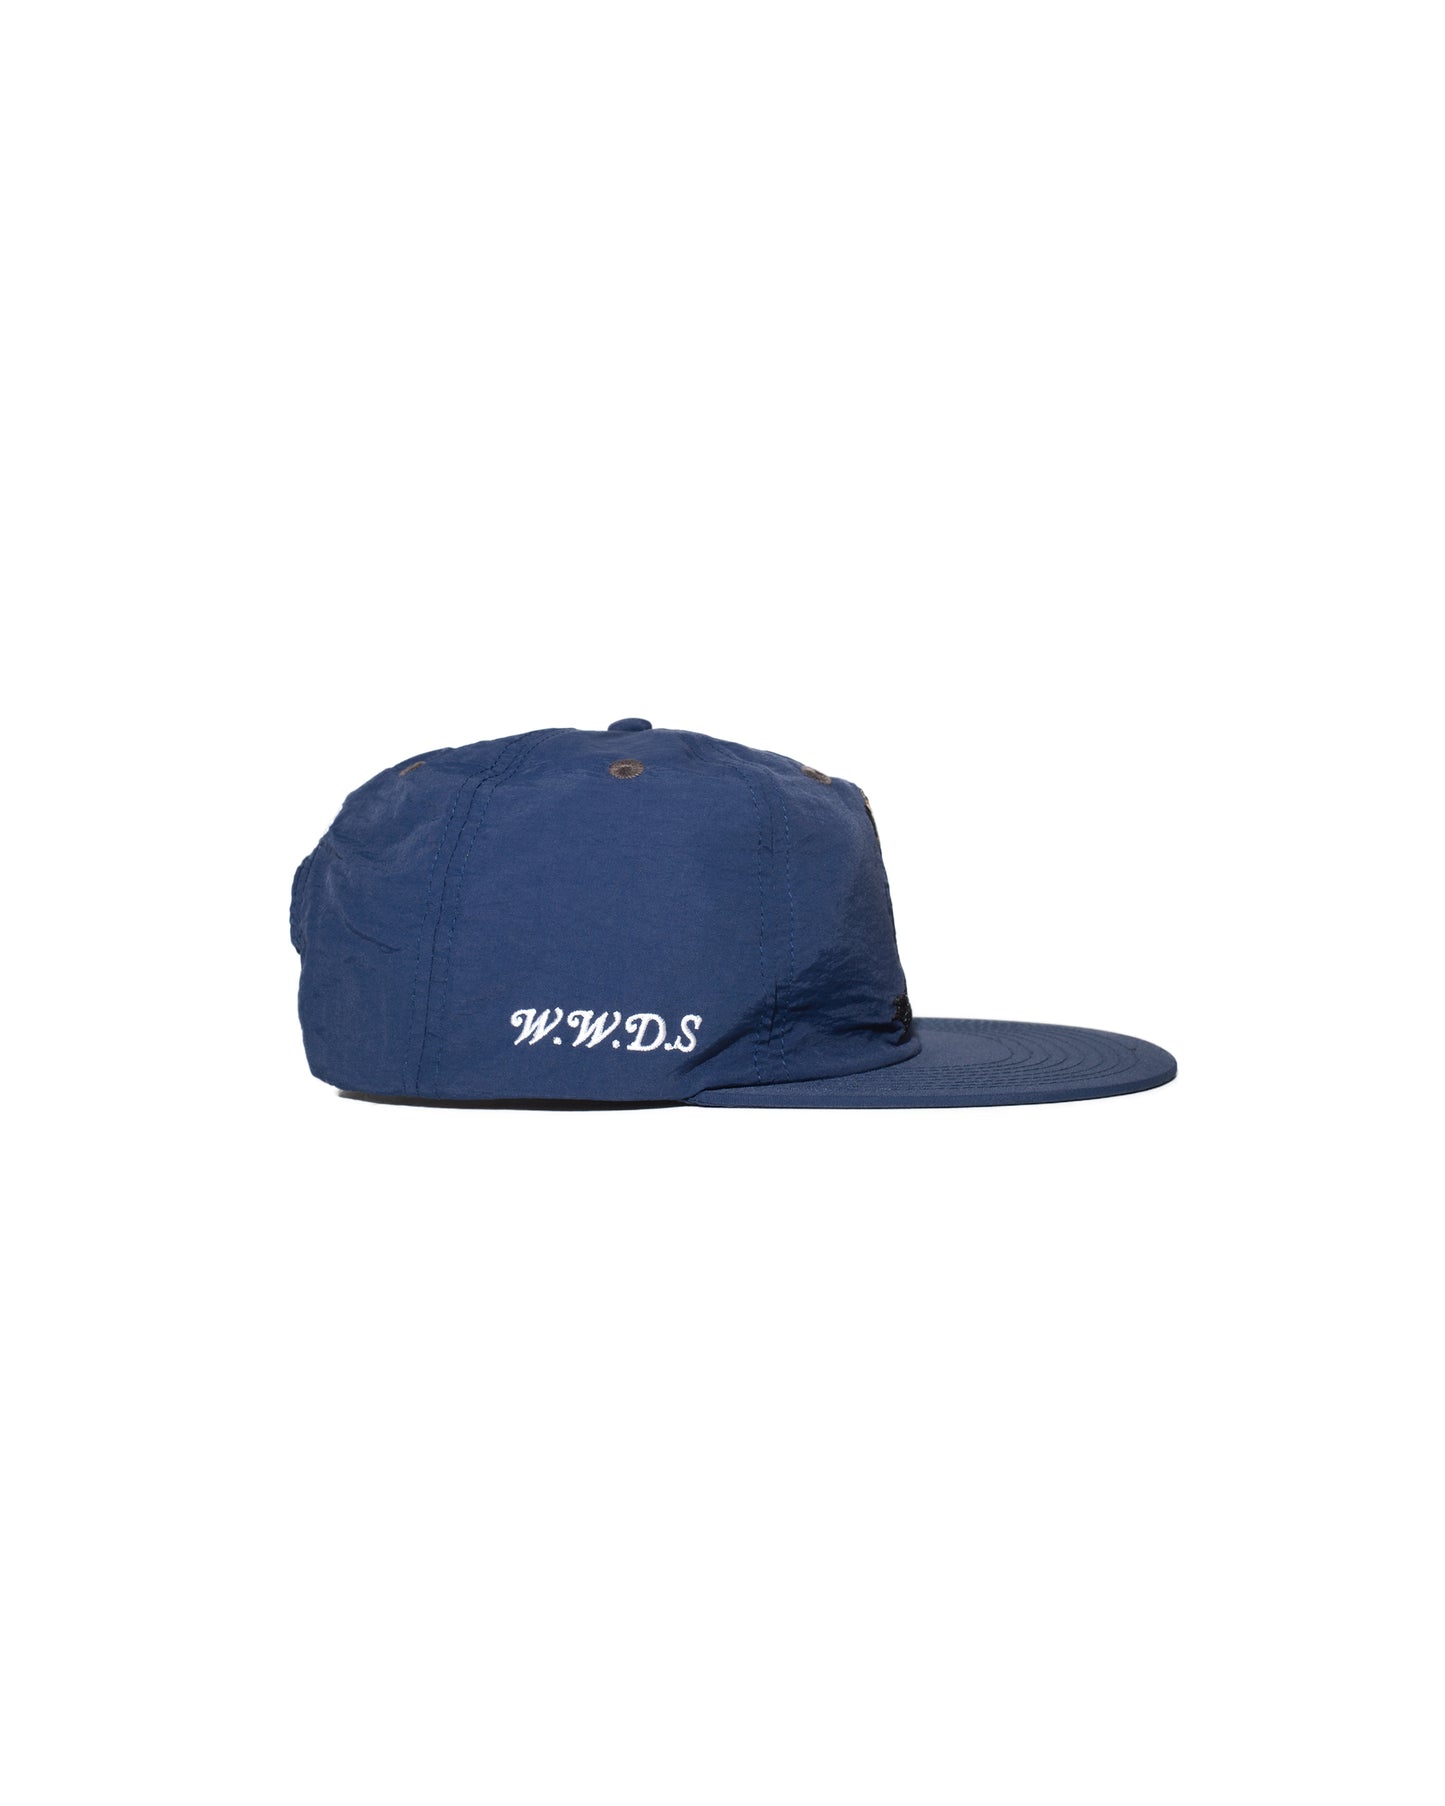 MALEFICENT HAT [NAVY BLUE]